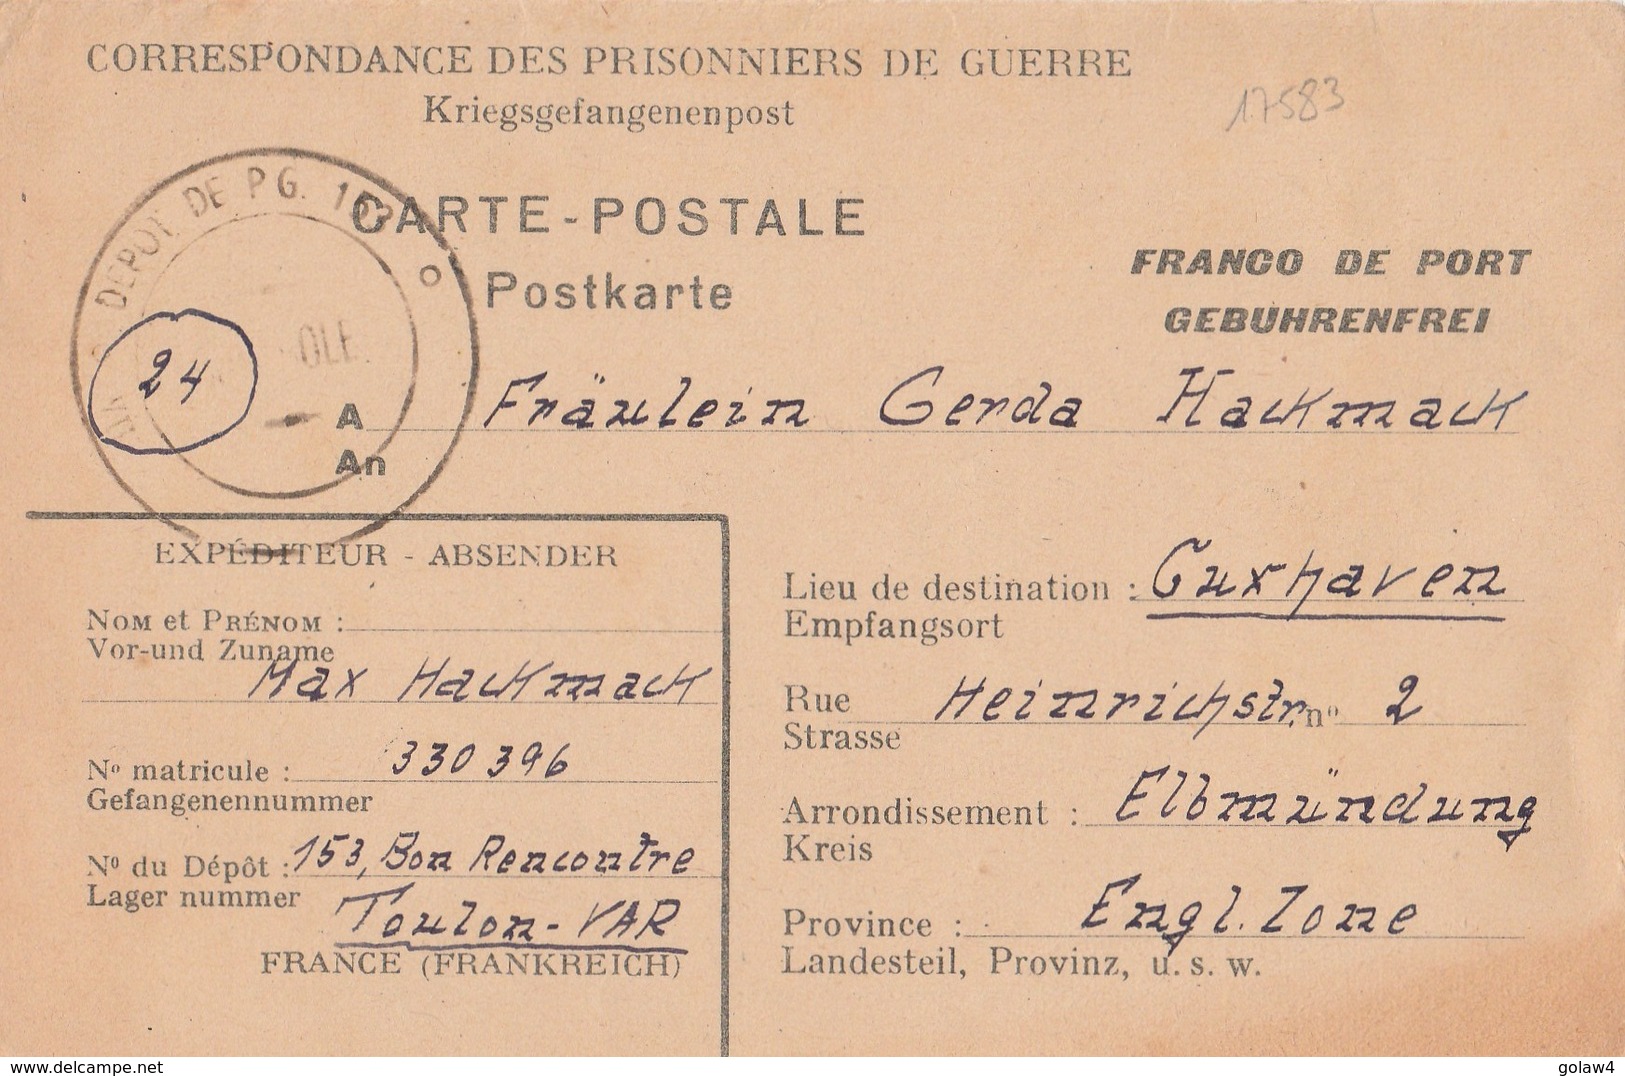 17583# CORRESPONDANCE PRISONNIERS DE GUERRE AVEC REPONSE DEPOT 153 TOULON VAR BON RENCONTRE 1947 GUXHAVEN ALLEMAGNE - Guerra De 1939-45